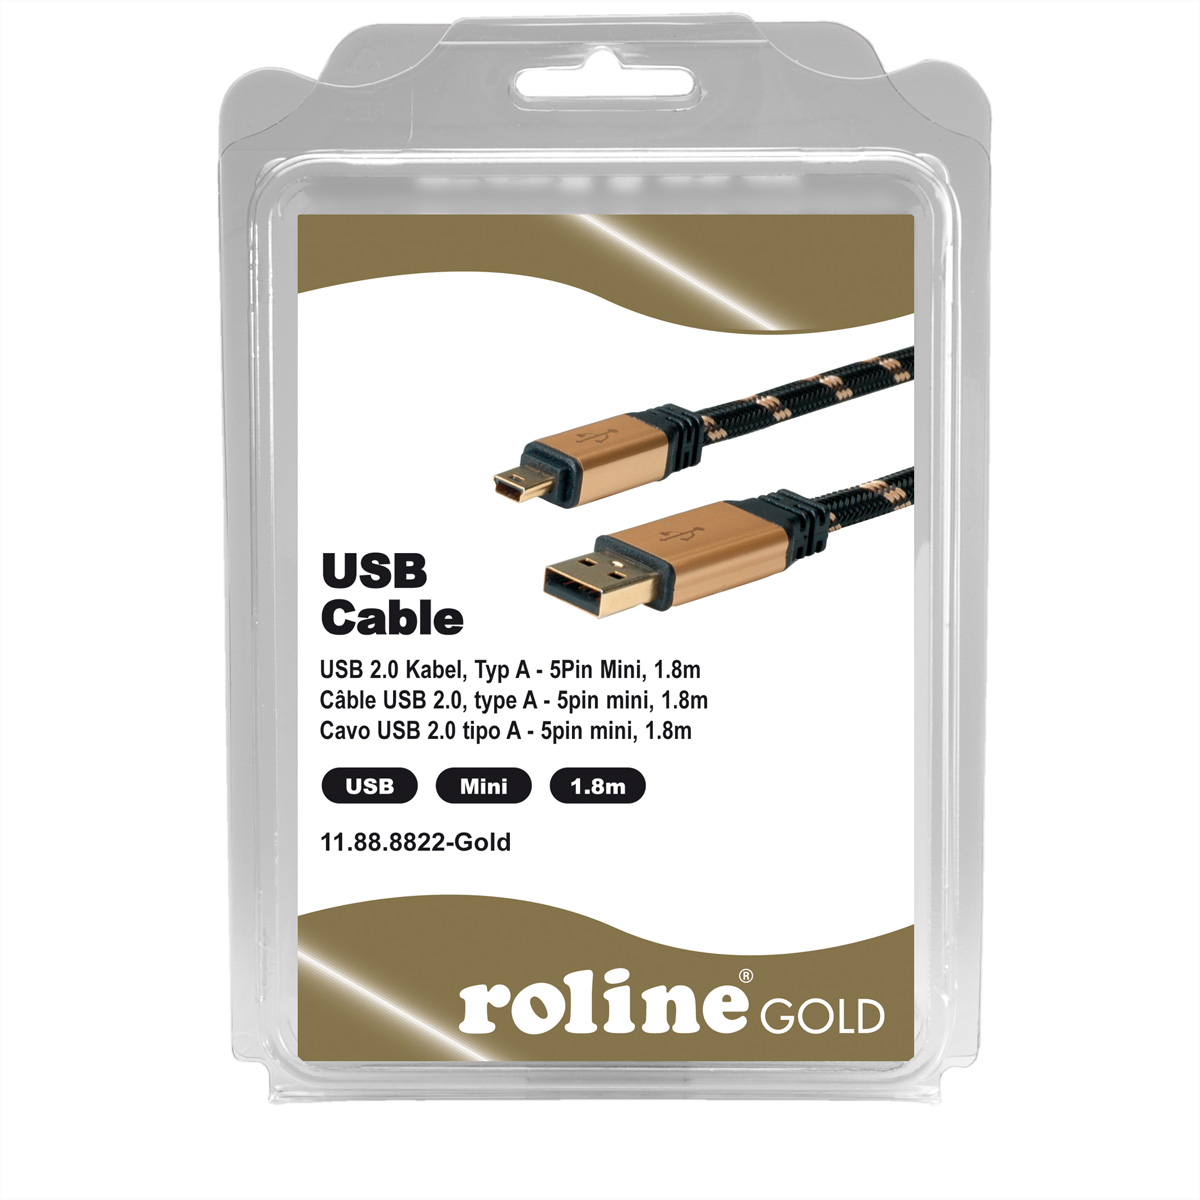 ROLINE GOLD Mini - Mini 2.0 2.0 Kabel 5-Pin Typ USB A Kabel, USB